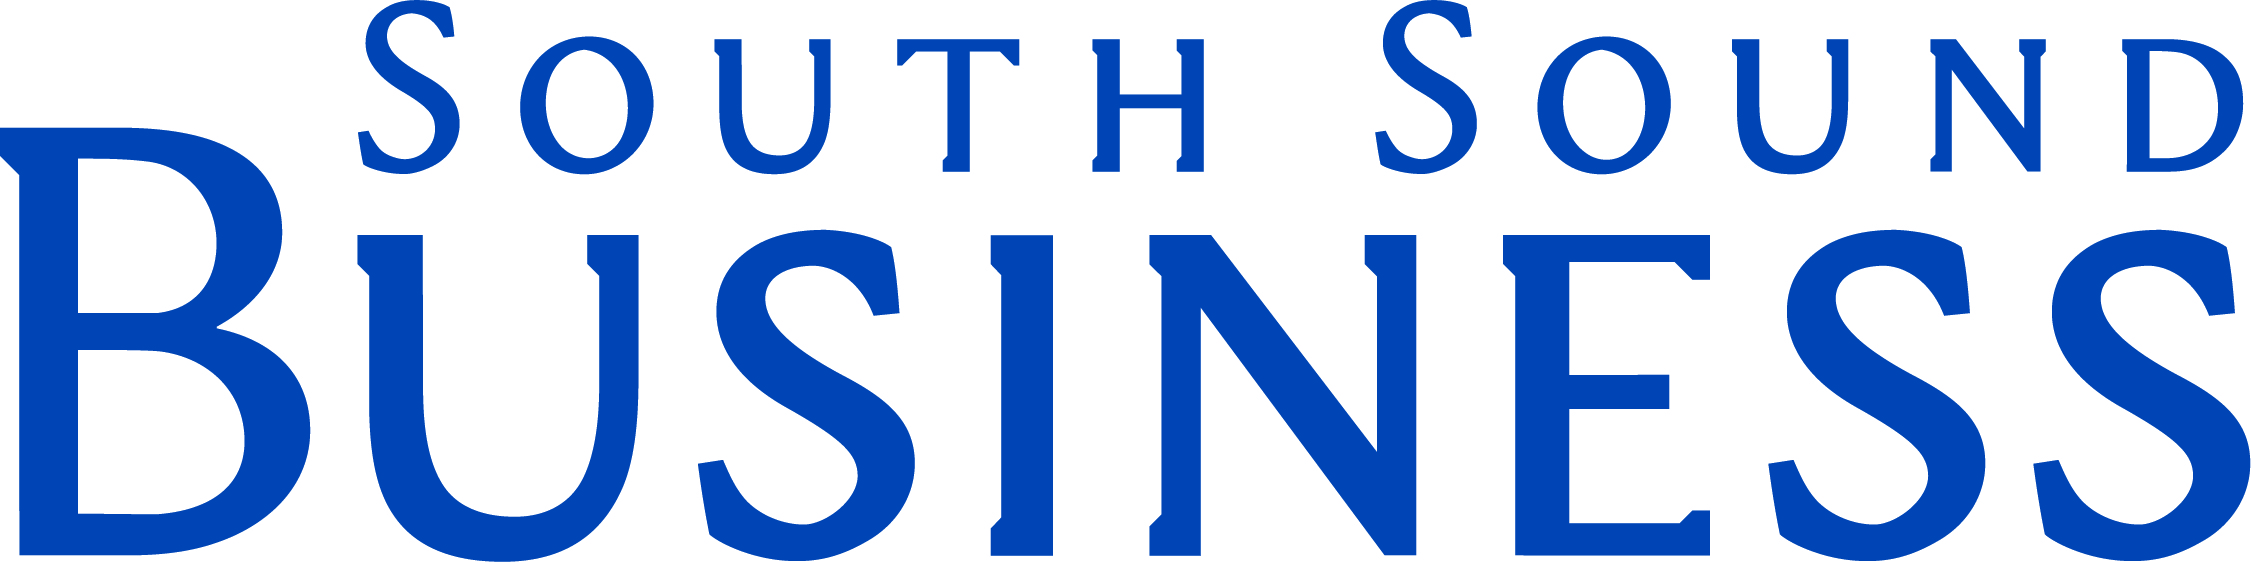 South Sound Business logo